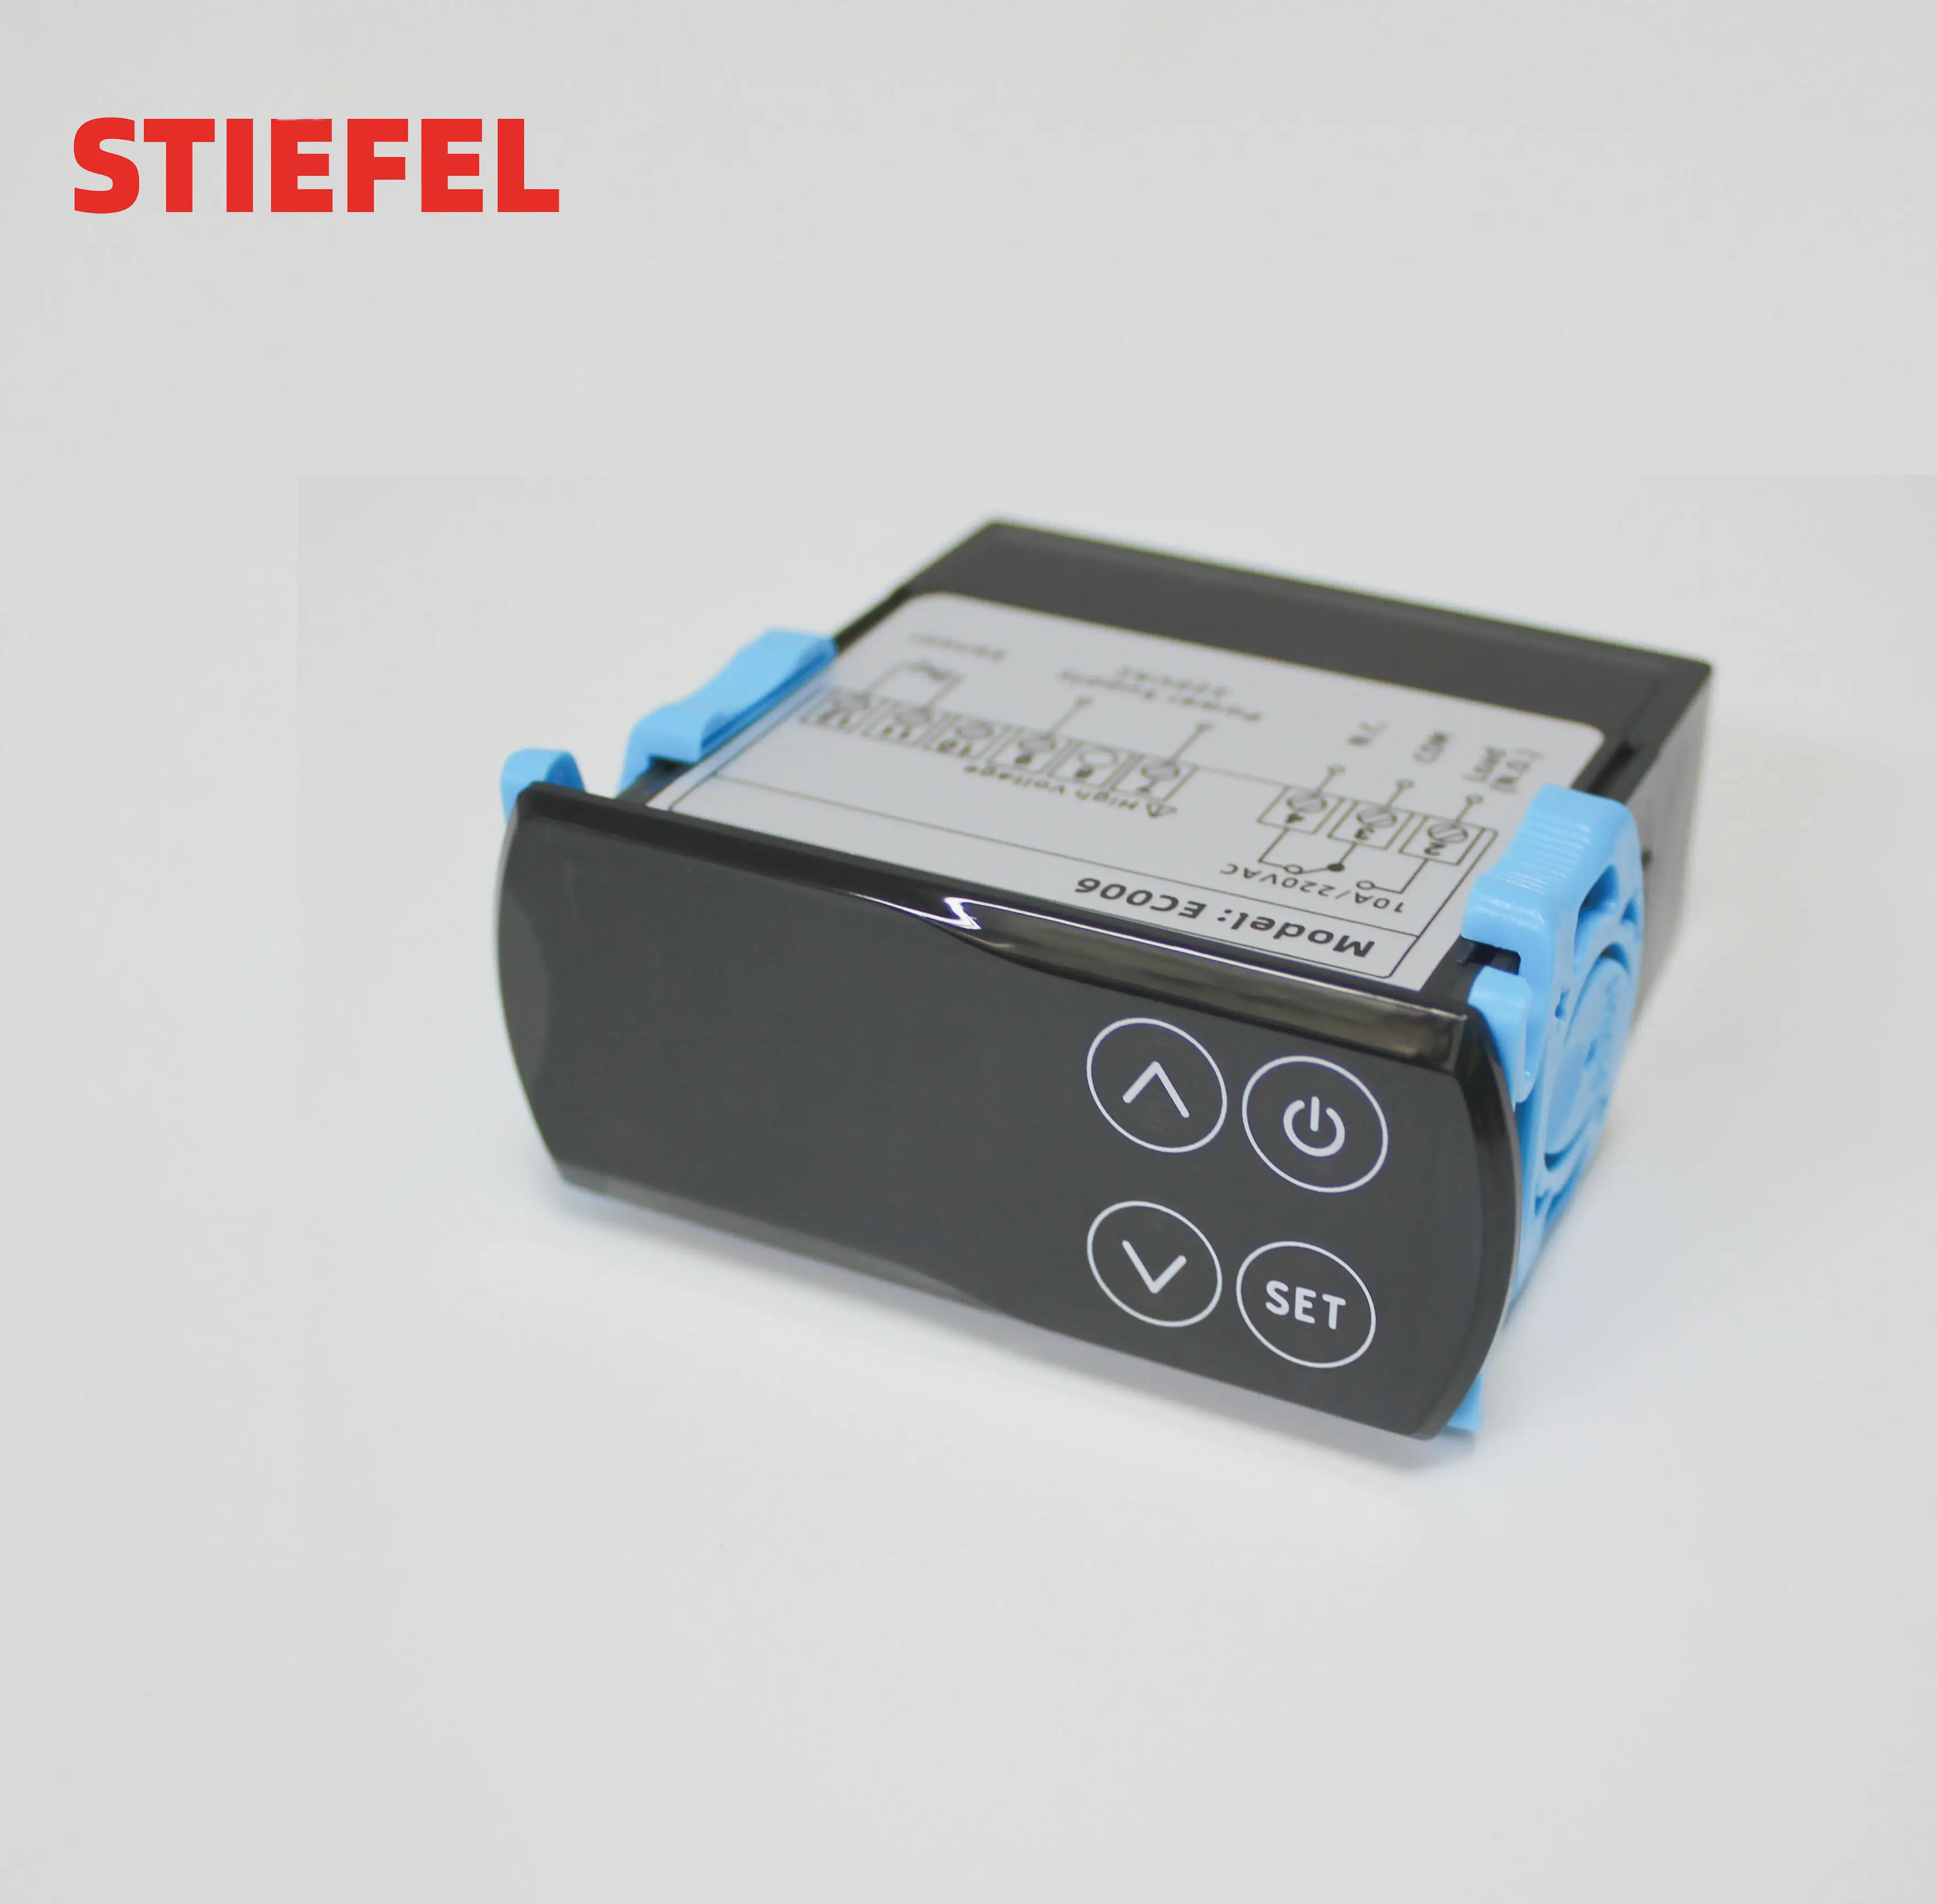 STIEFEL controlador de temperatura eletrônico 220V controlador de temperatura de aquecimento e resfriamento com tela de toque digital